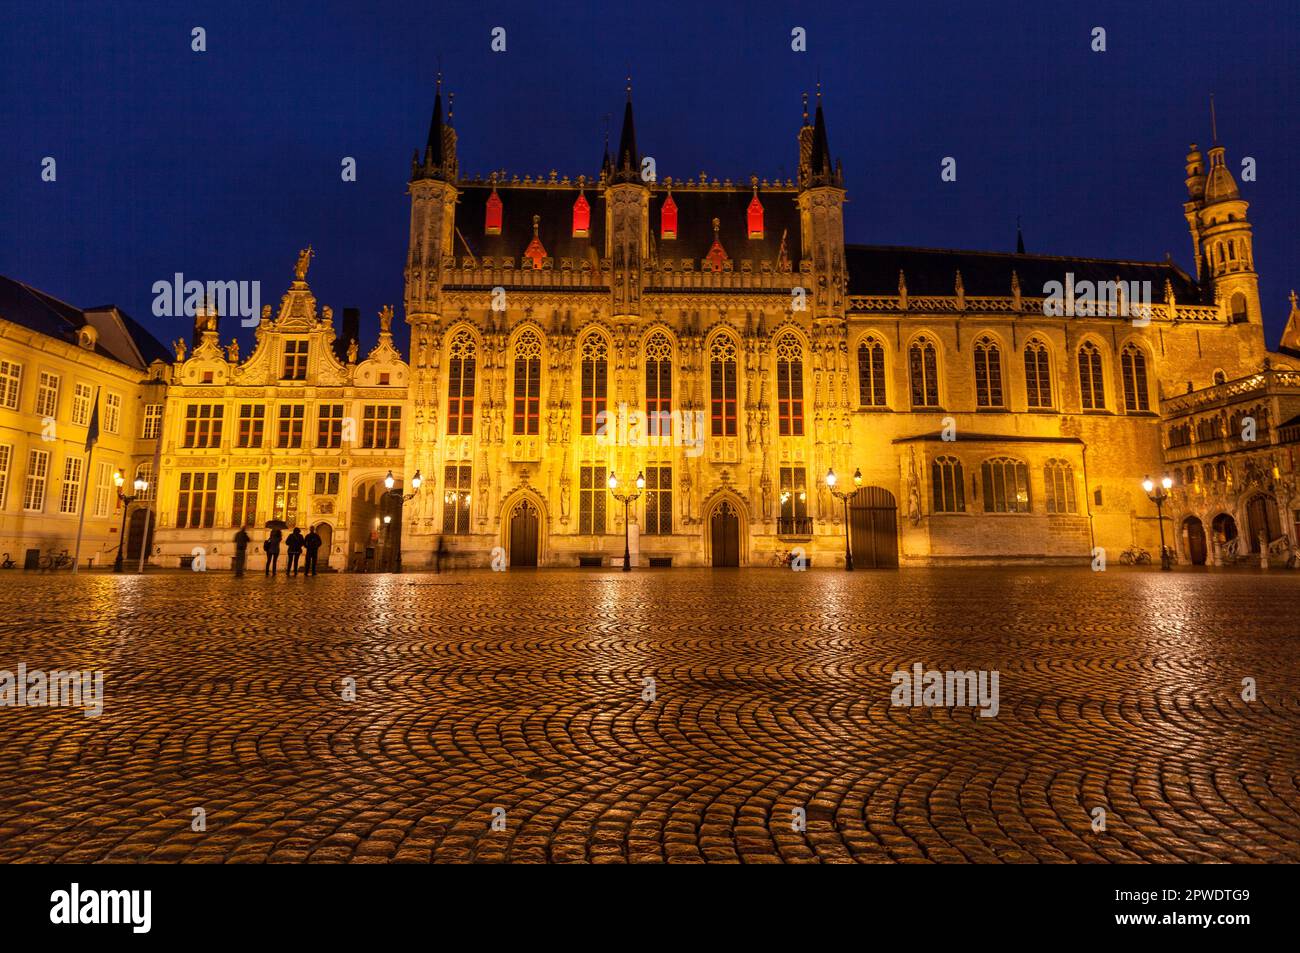 Renaissance gothique historique Cour provinciale - Provinciaal Hof sur la place du marché Grote Markt au crépuscule dans un site du patrimoine mondial de l'UNESCO, Bruges, Belgique Banque D'Images